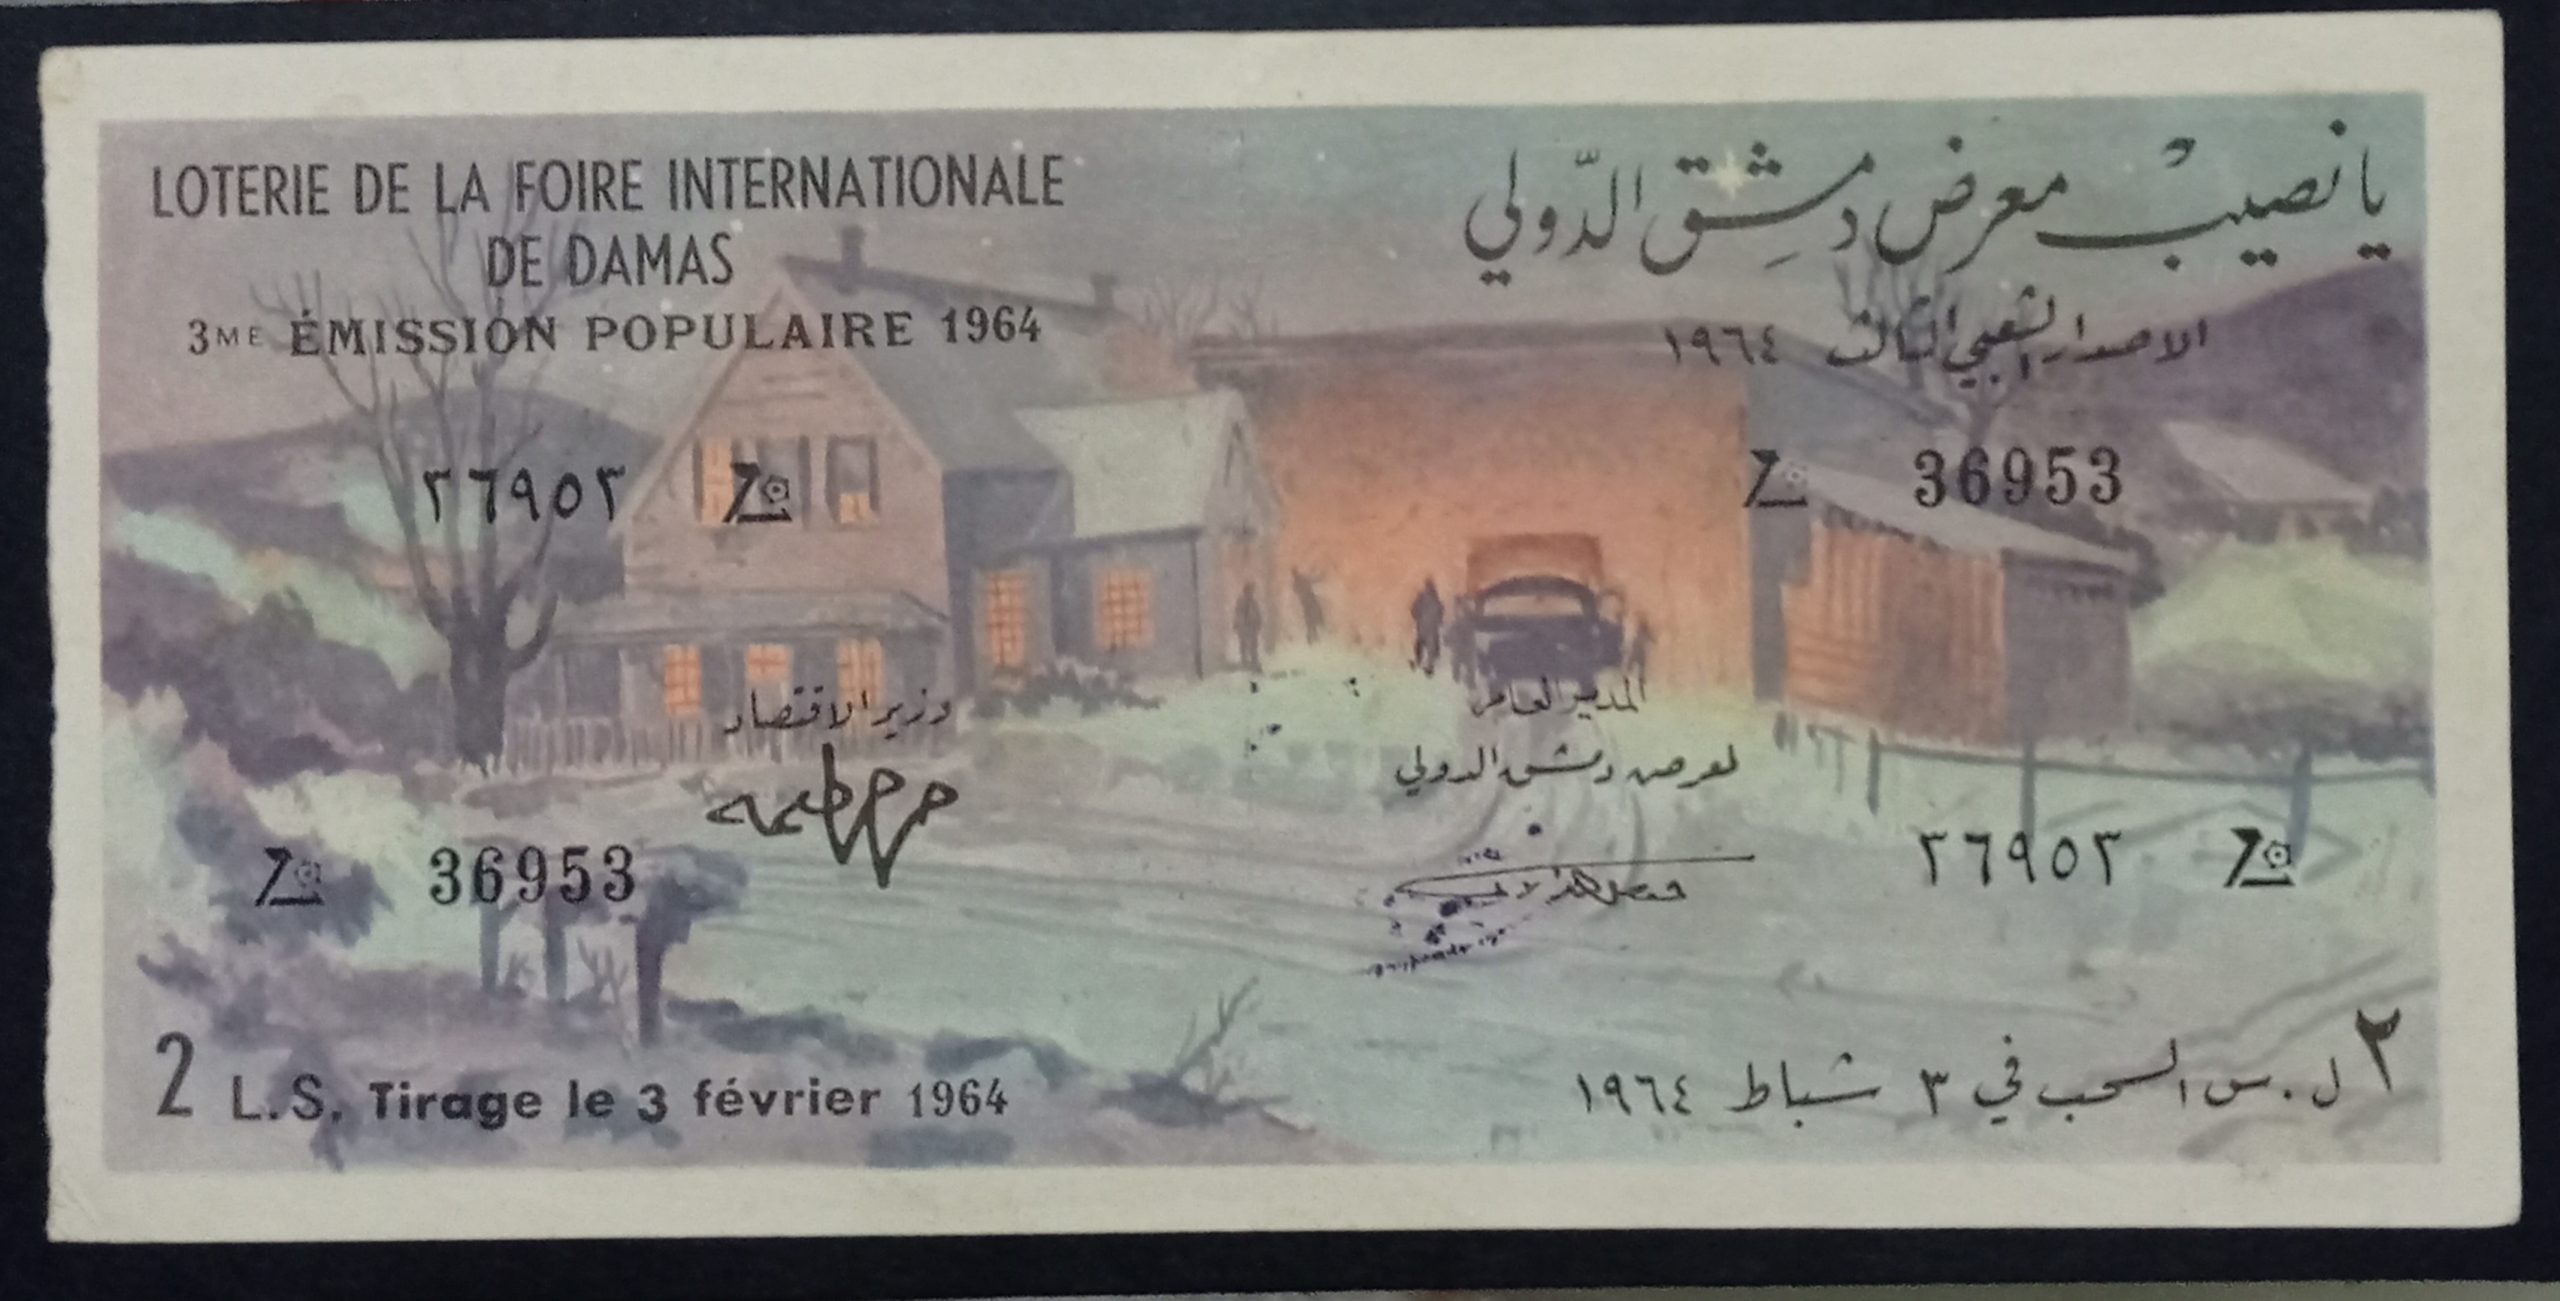 التاريخ السوري المعاصر - يانصيب معرض دمشق الدولي - الاصدار الشعبي الثالث عام 1964